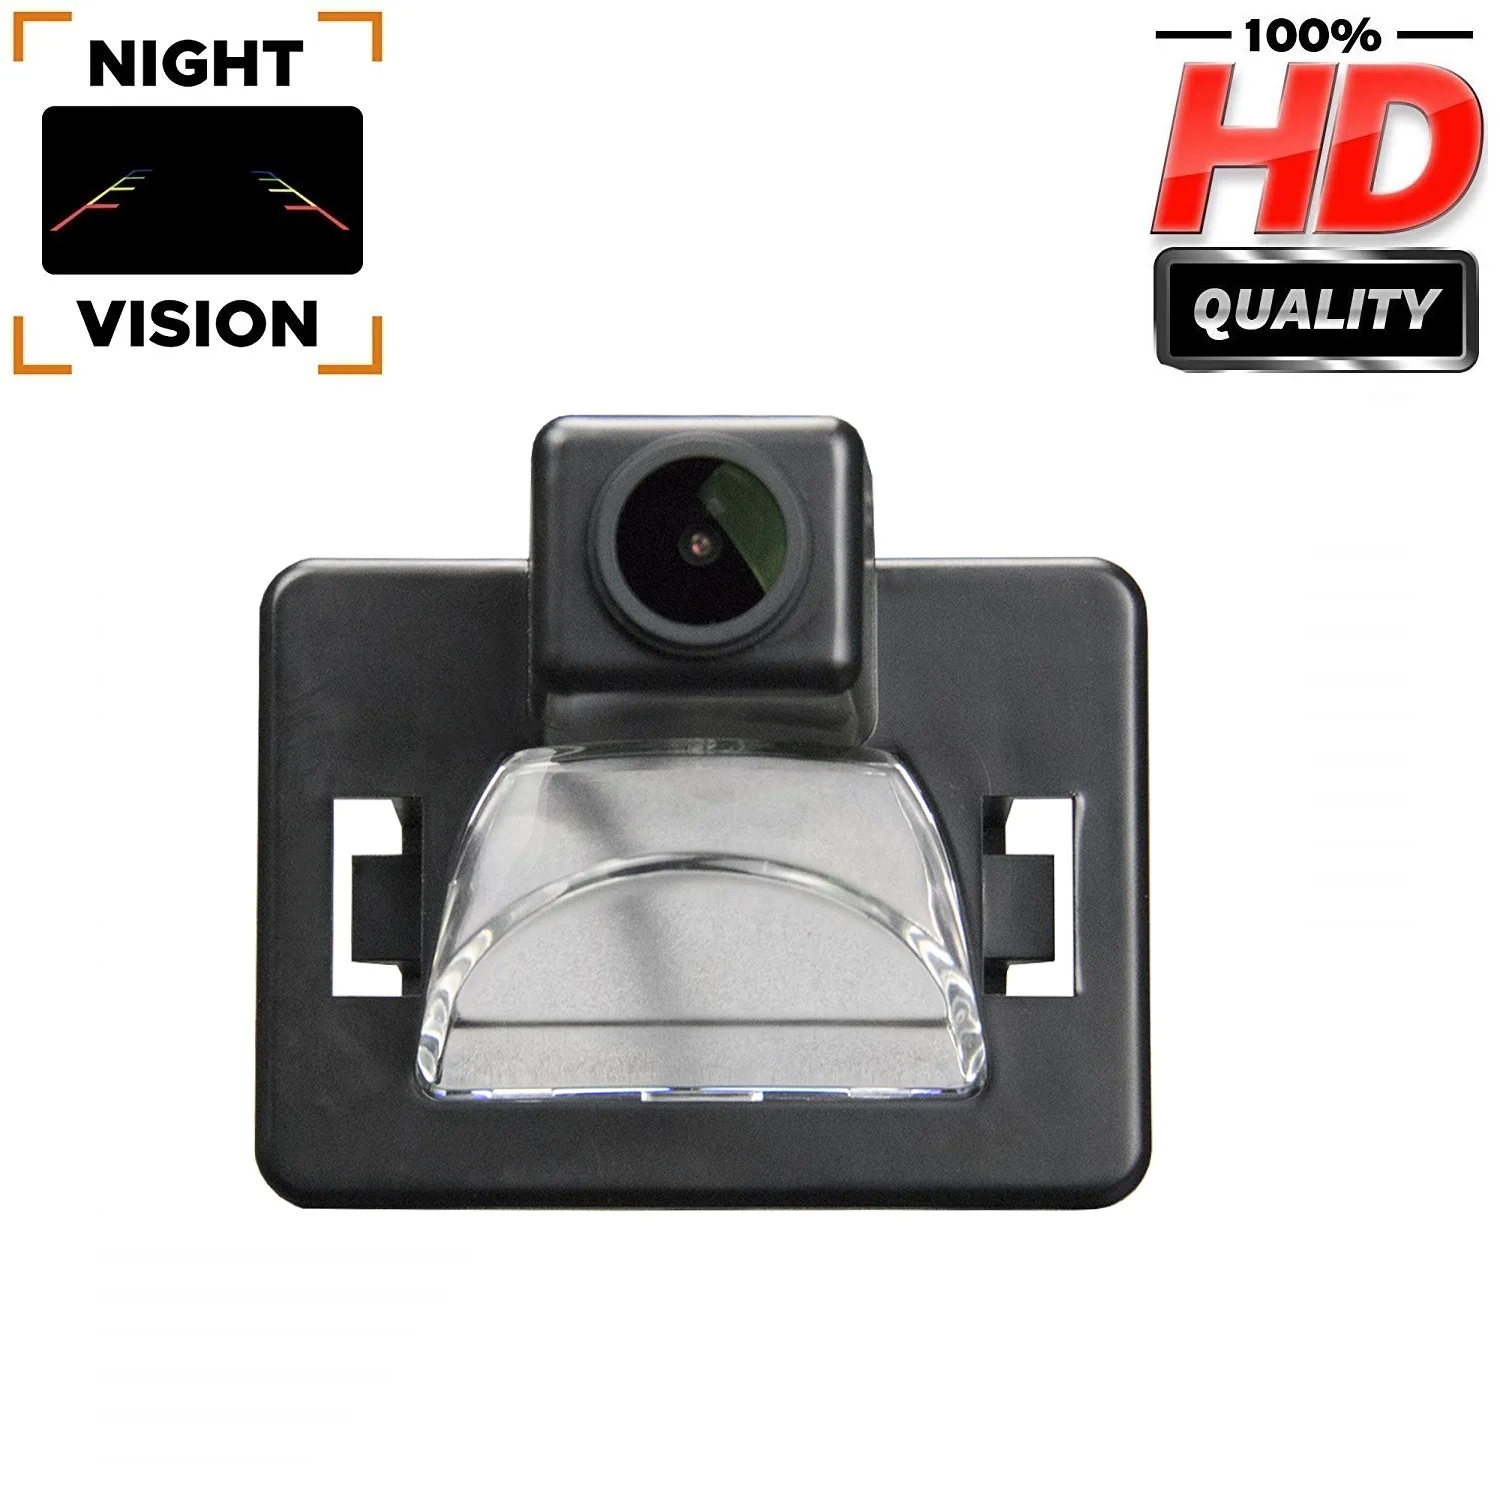 

Misayaee HD 1280*720P Rear View Backup Camera for Mazda5 Mazda 5 2006 -2010 M5, Night Vision Camera License Plate Light Camera